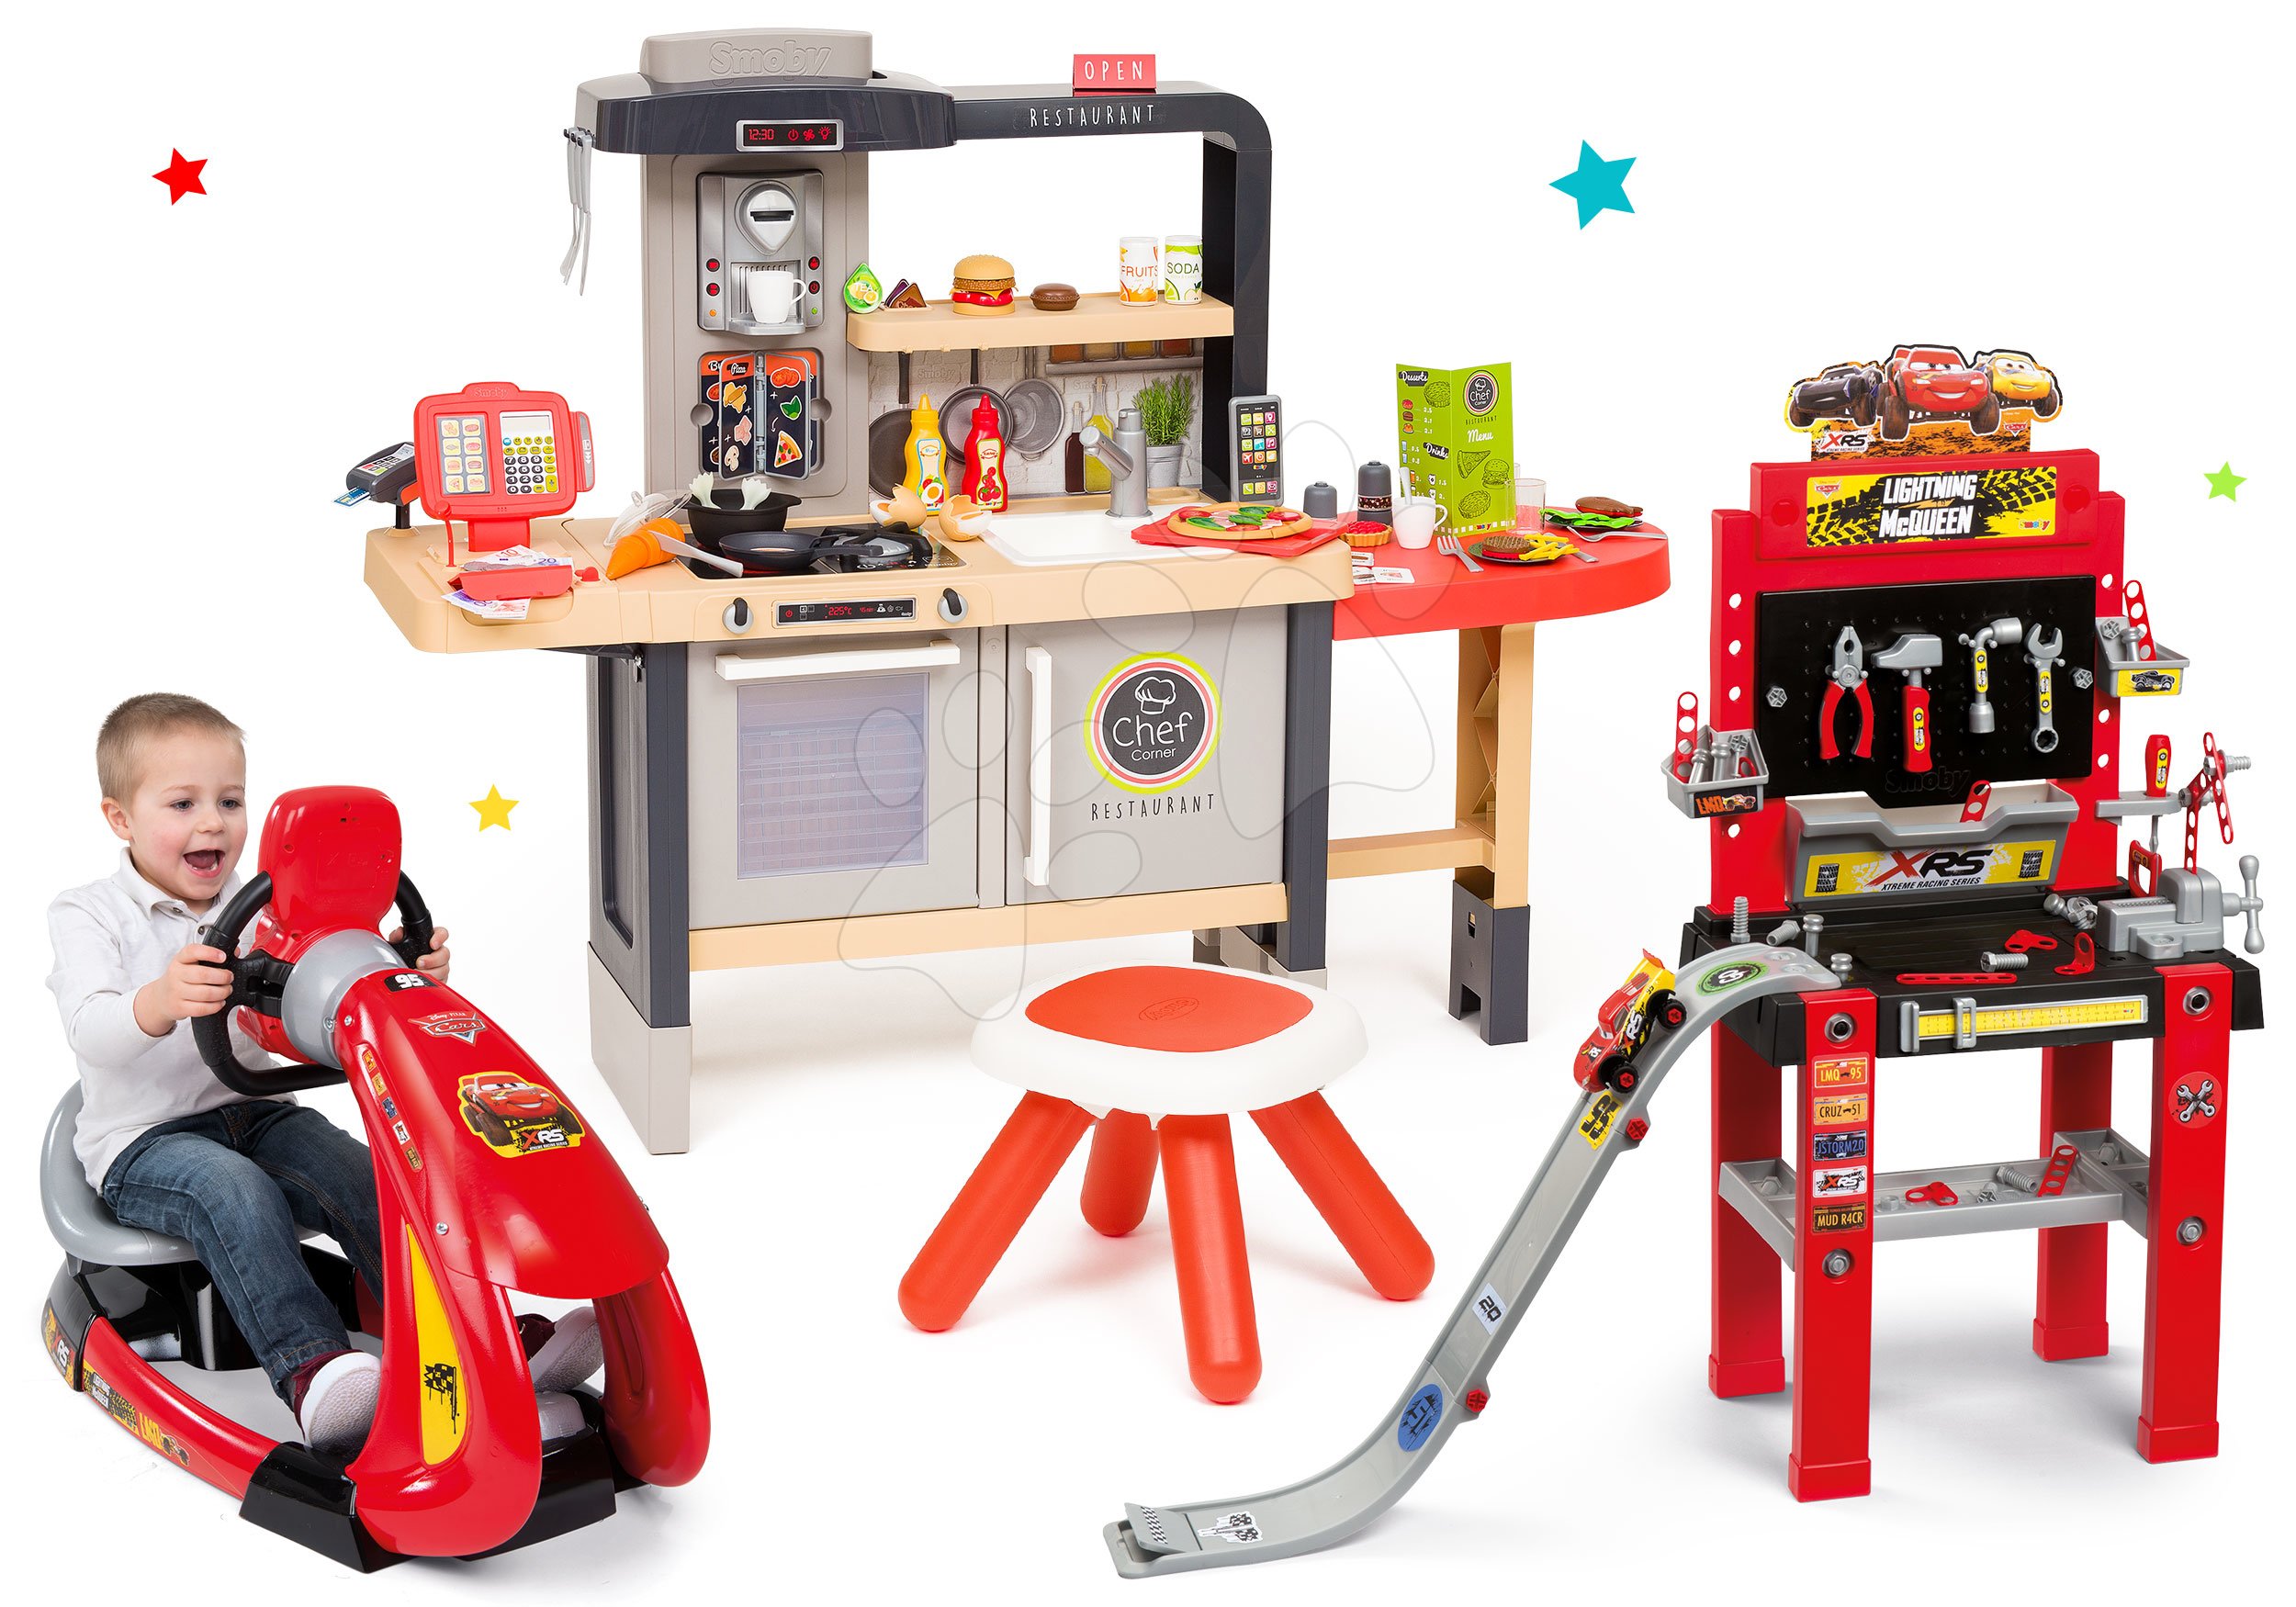 Kuchynky pre deti sety - Set reštaurácia s elektronickou kuchynkou Chef Corner Restaurant Smoby a pracovná dielňa Cars s elektronickým trenažérom